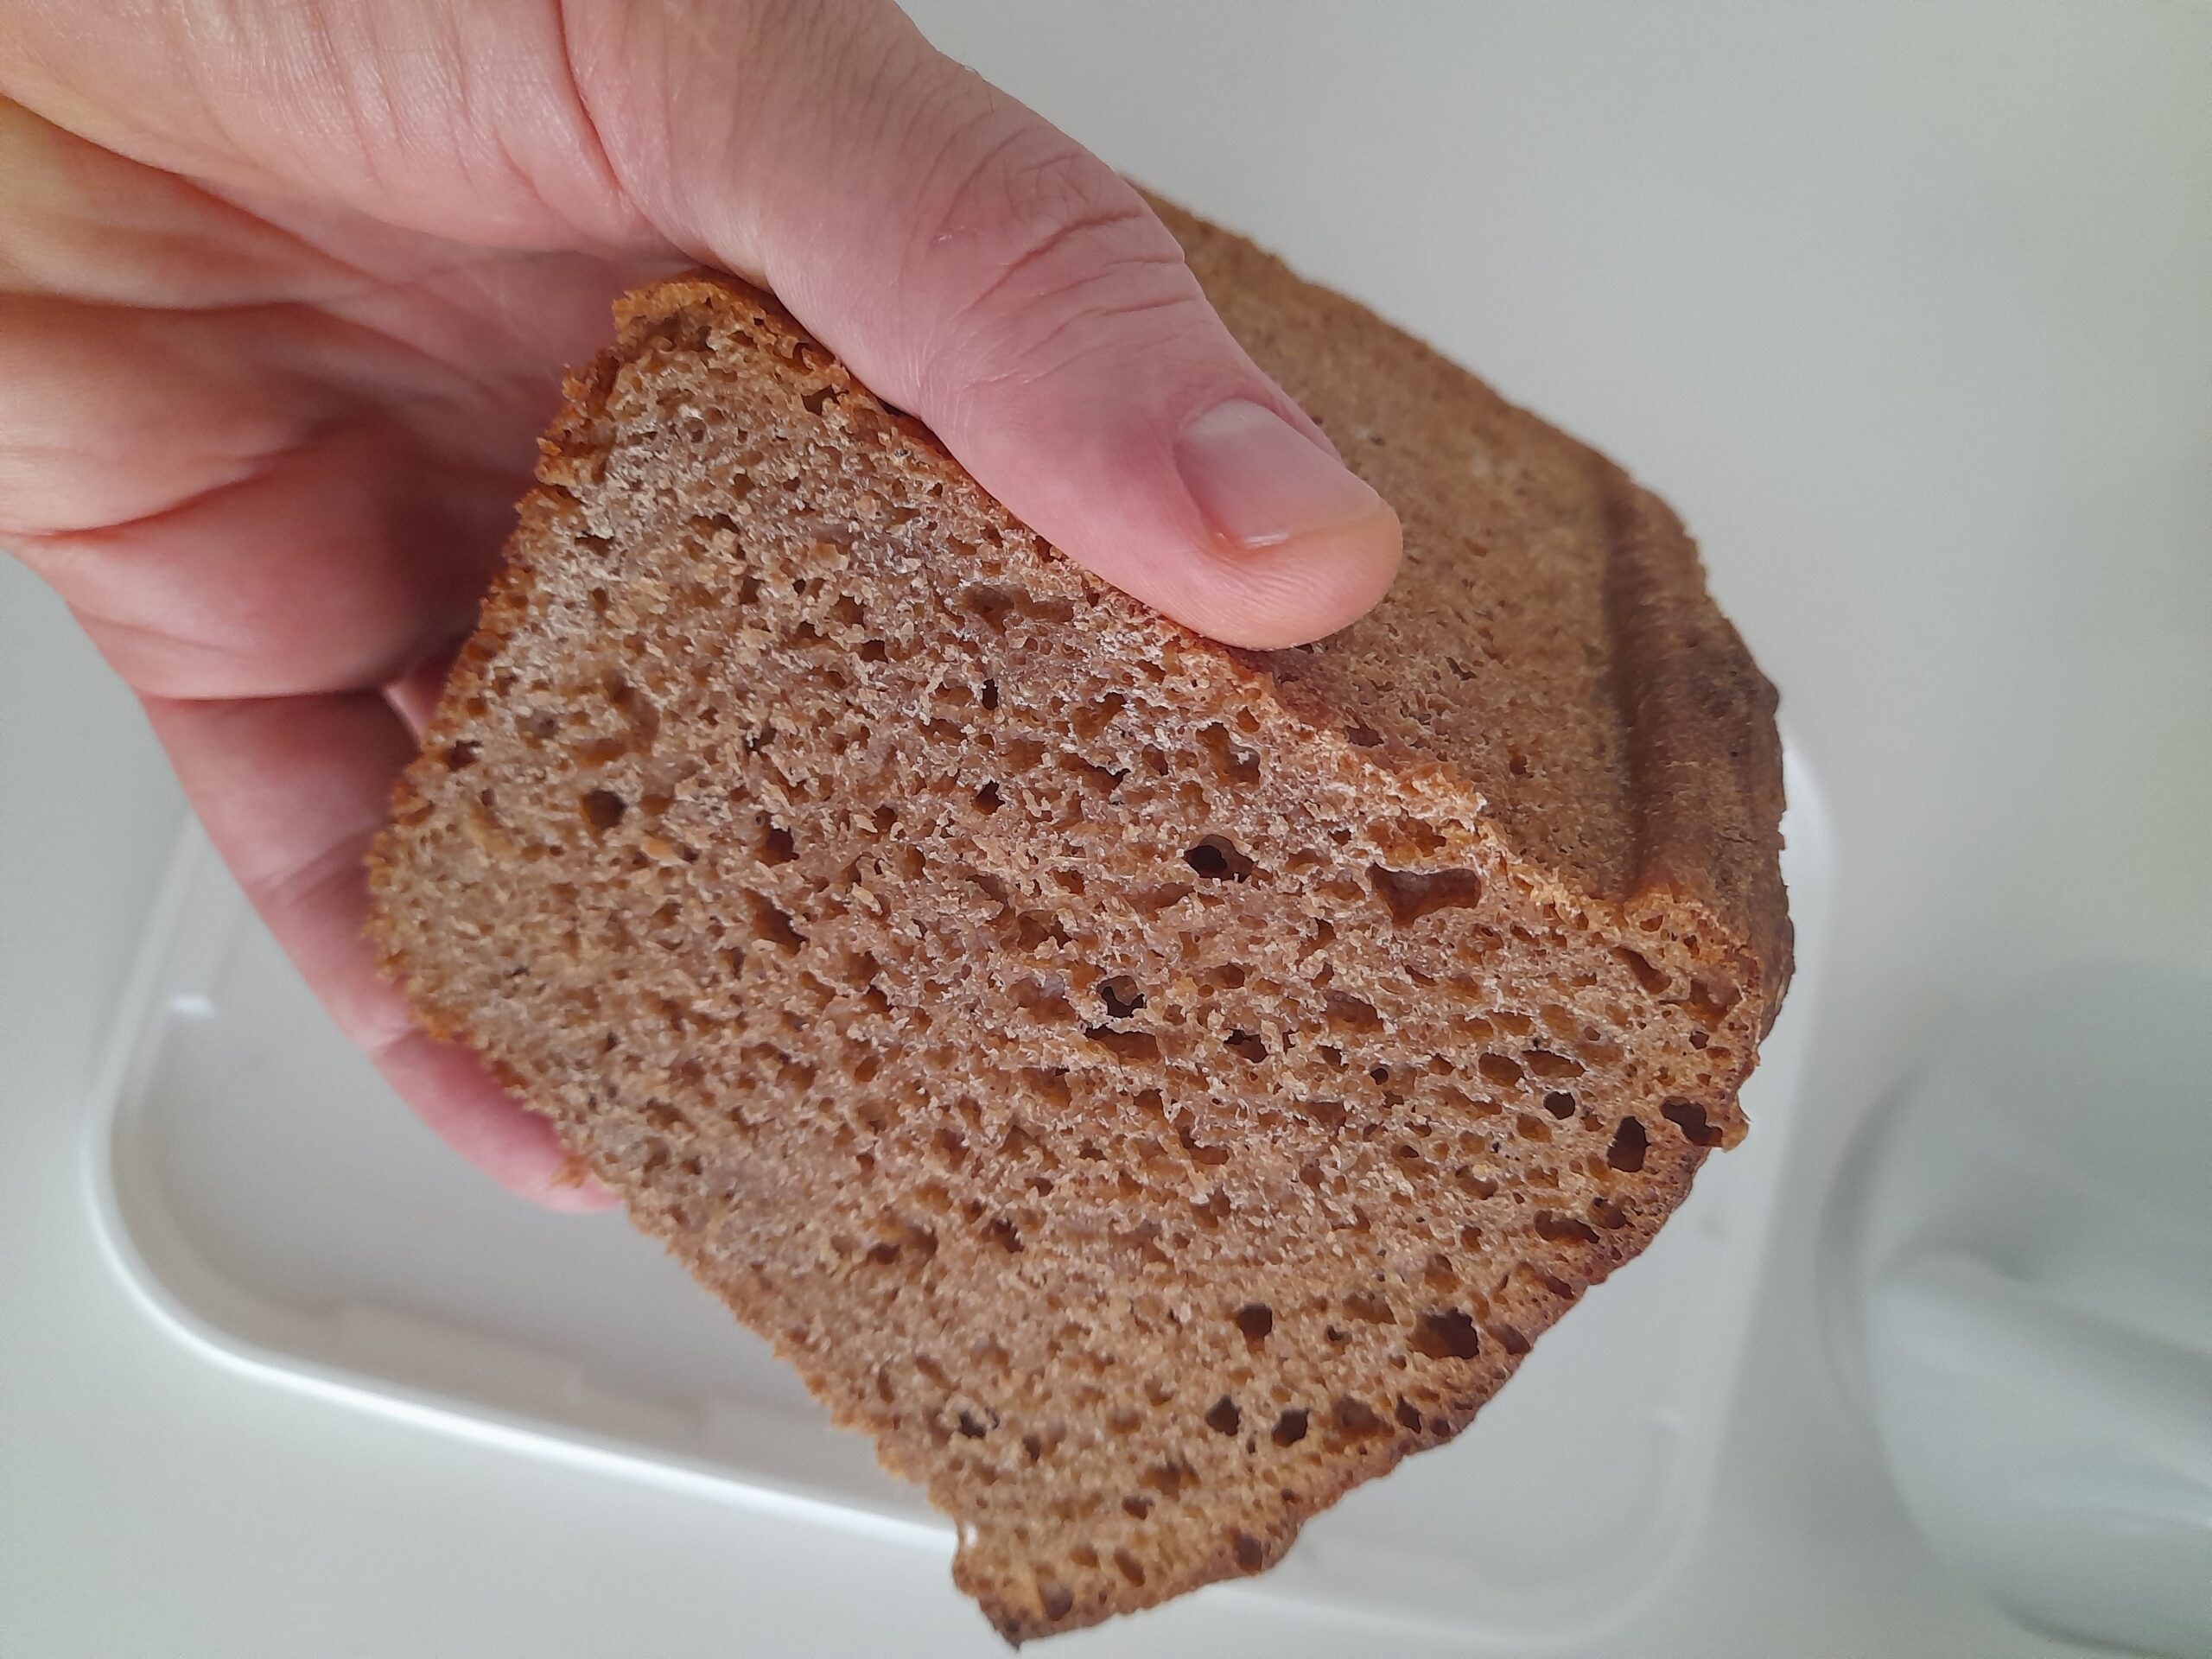 Как хранить хлеб домашней выпечки